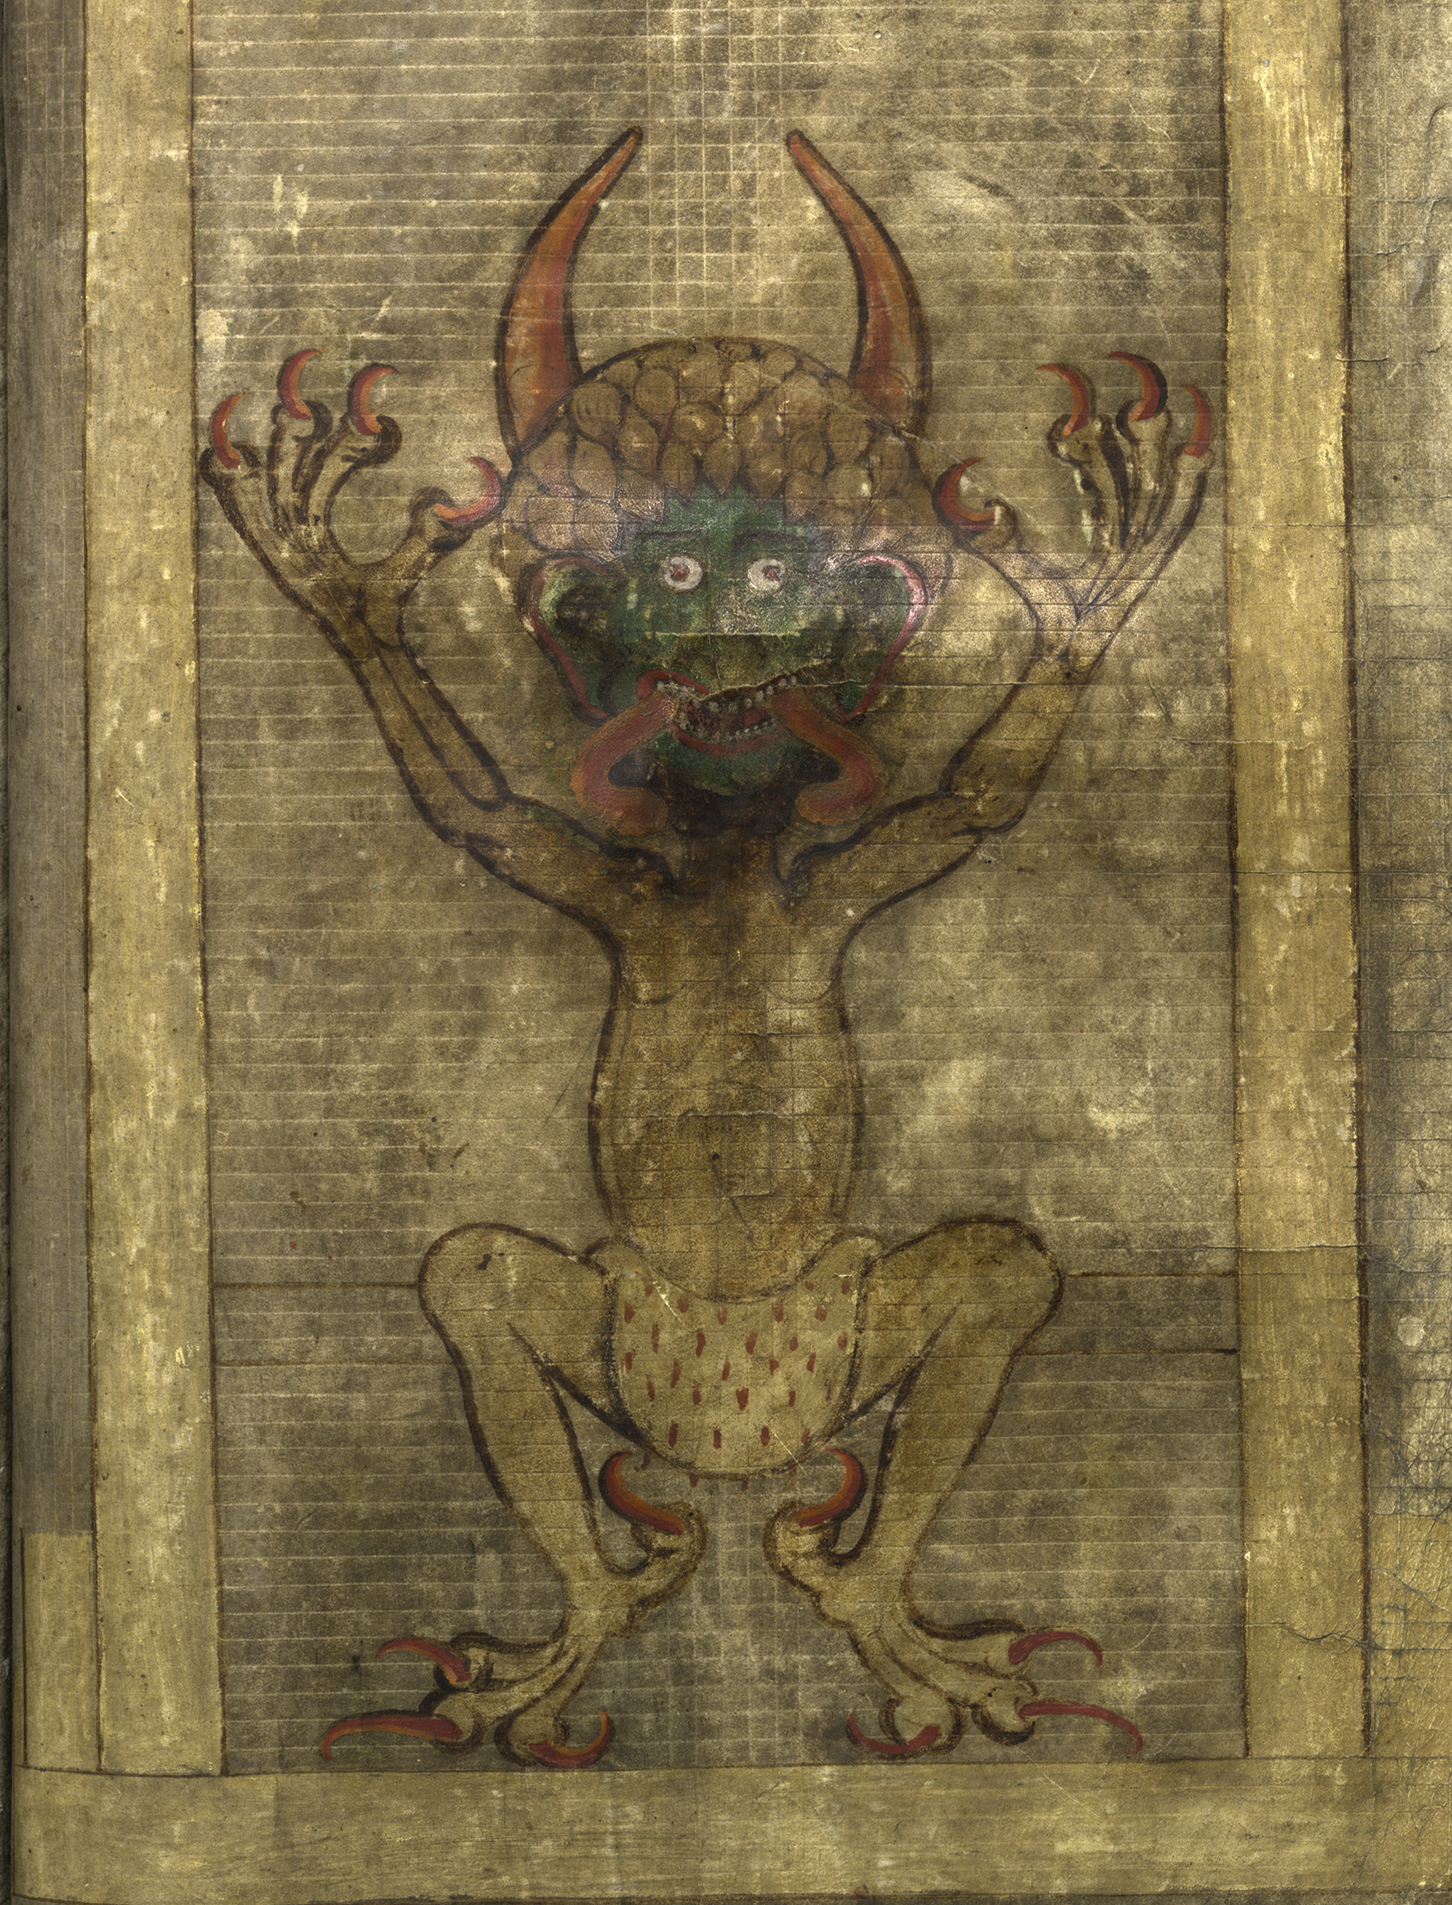 Målning på boksida i pergament av en djävul med röda klor och tungan utsträckt.